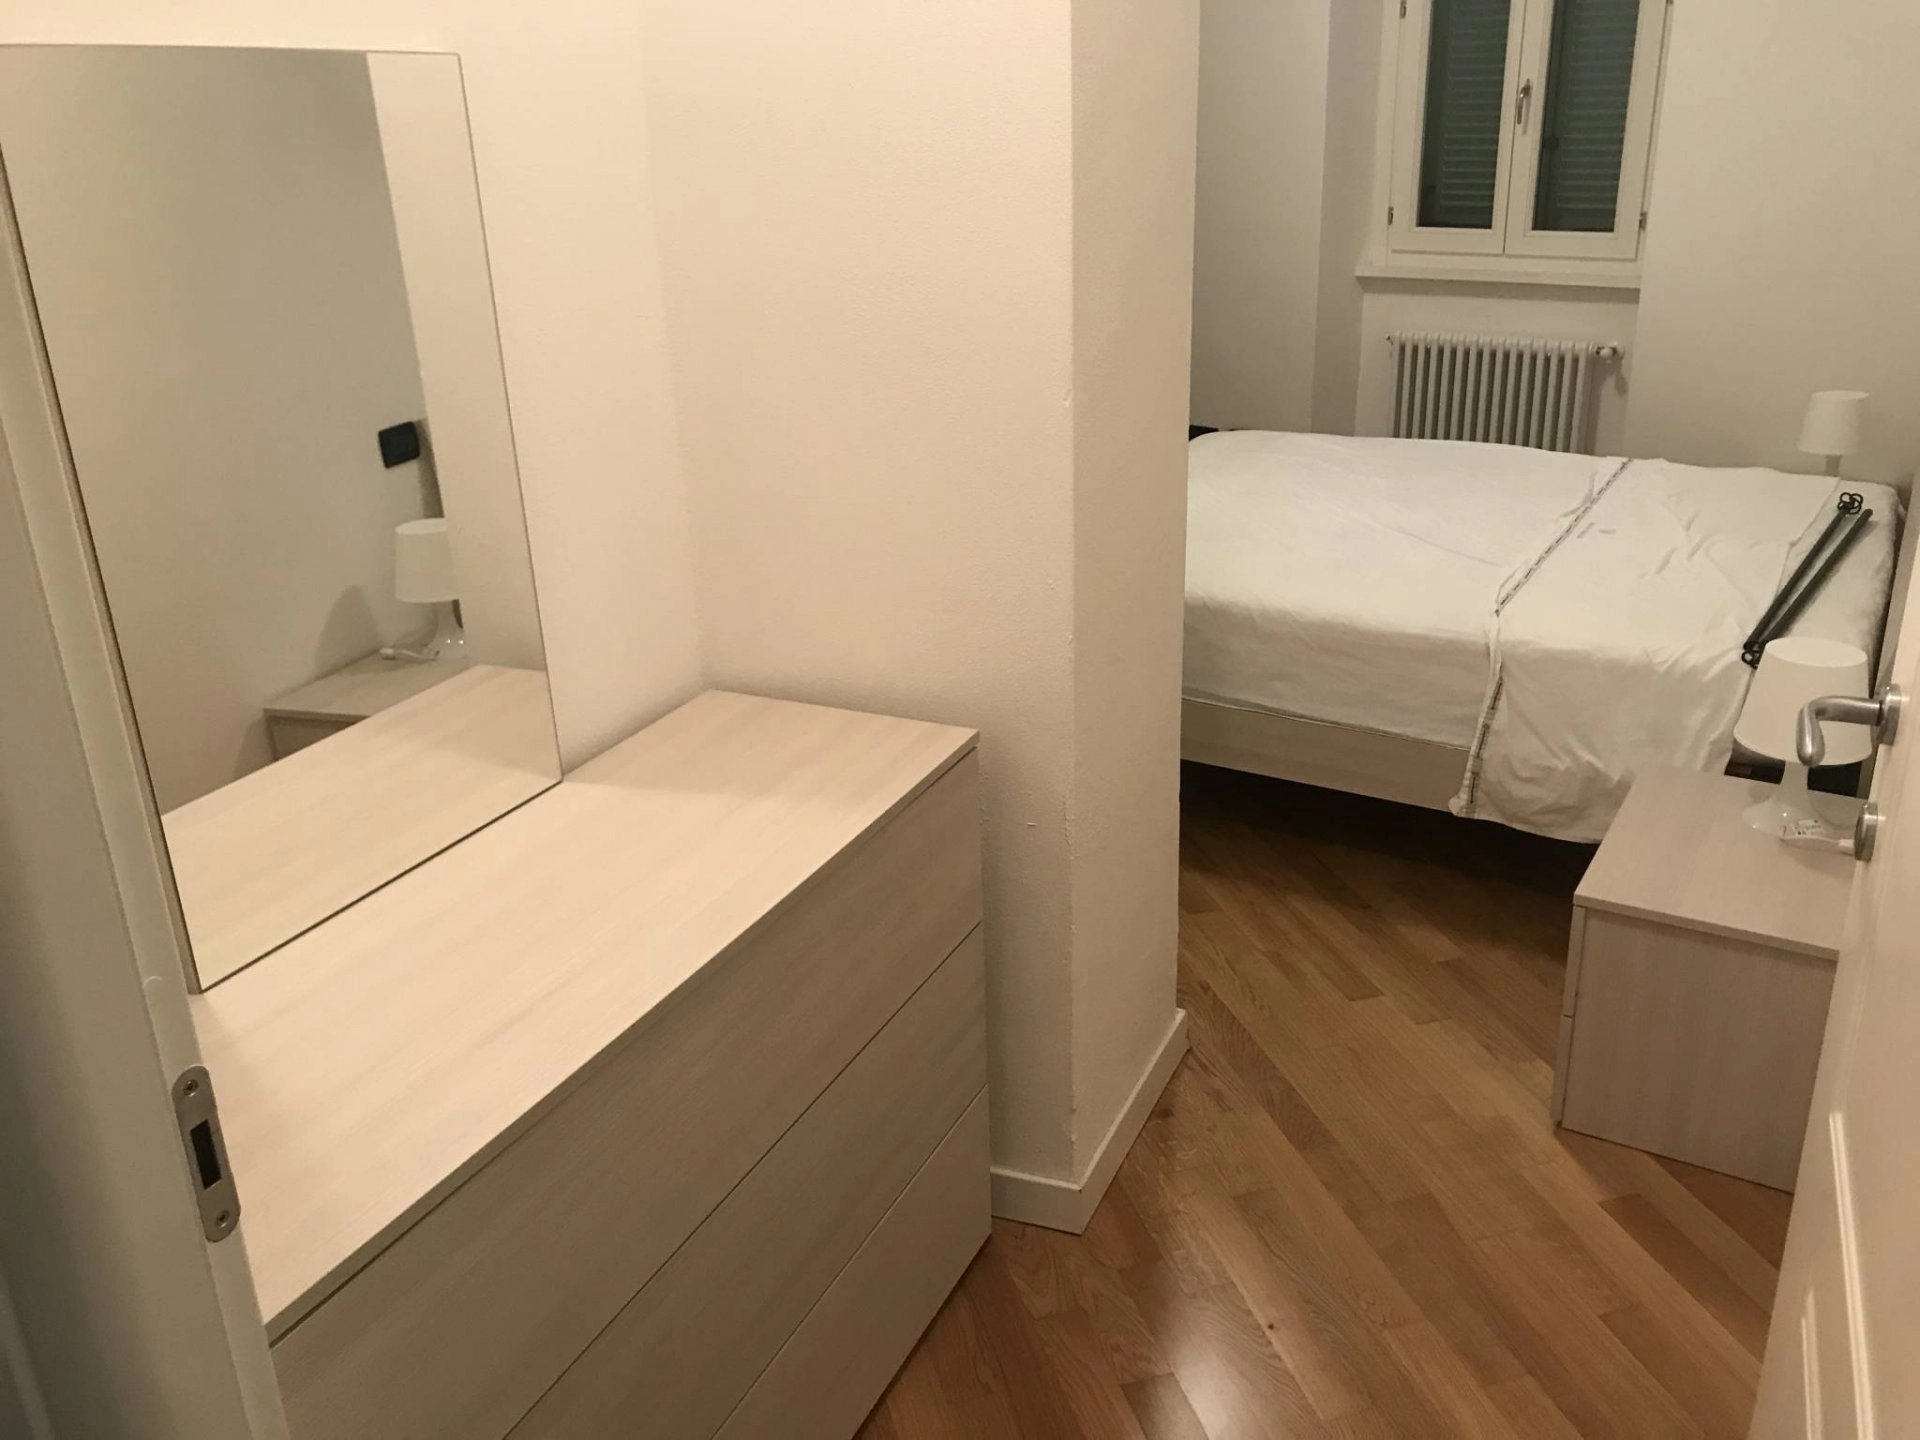 Sale Apartment - Tremezzina - Italy